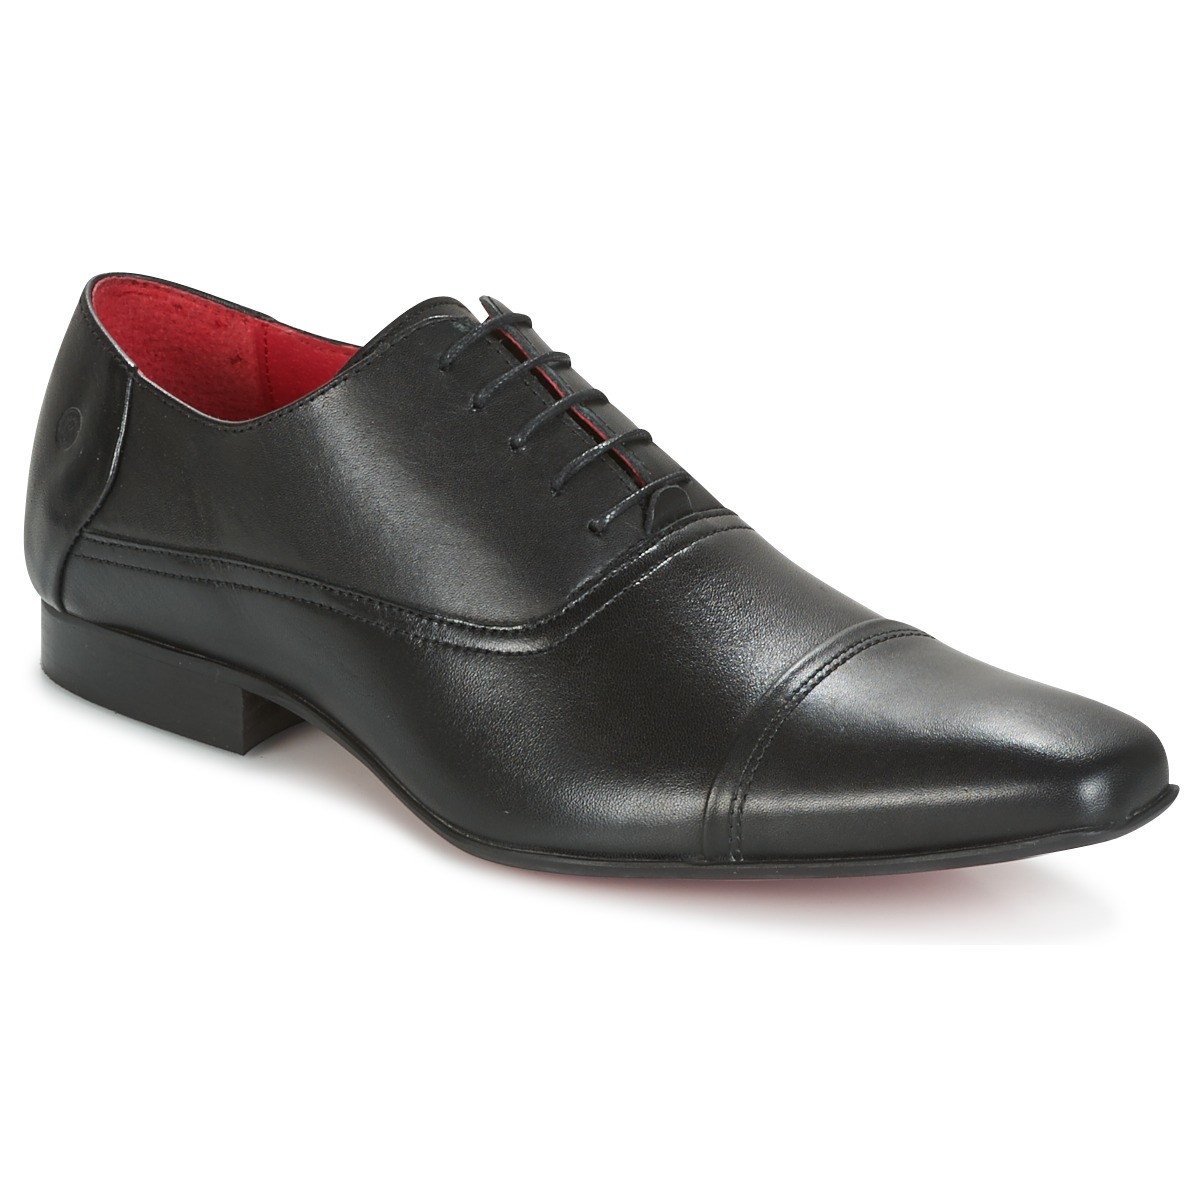 Shoes Men Brogues Carlington ITIPIQ Black